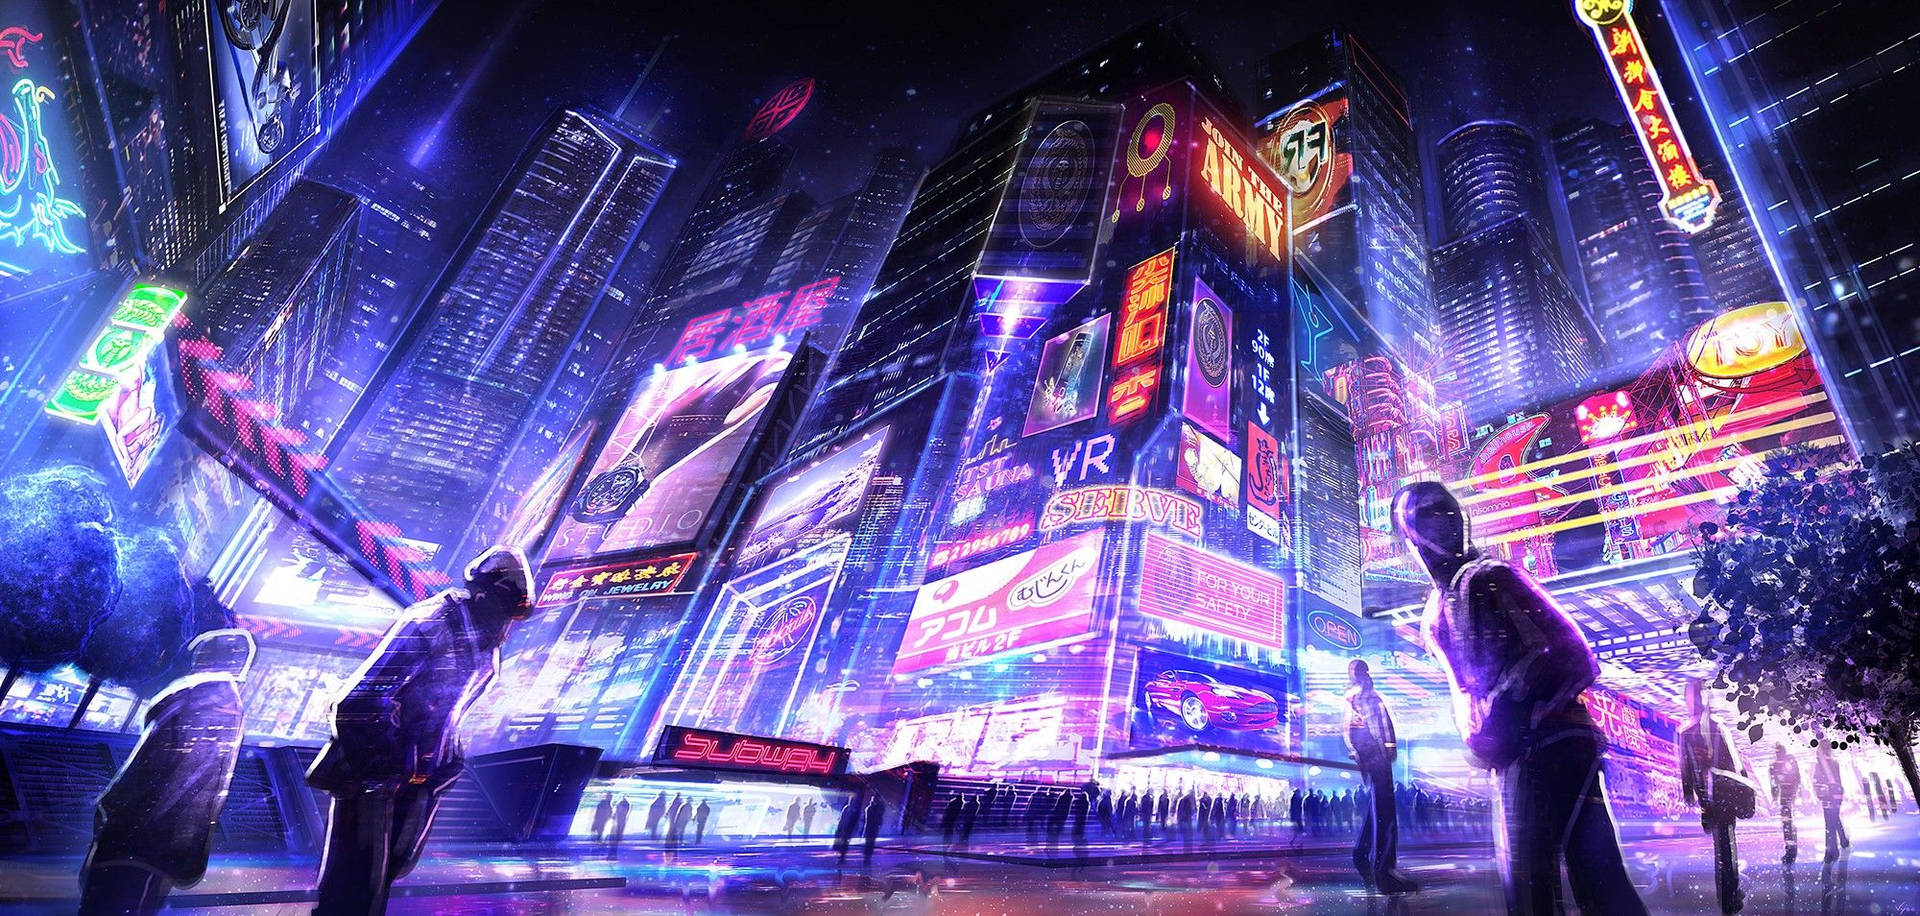 Cyberpunk City 4K wallpaper  Cyberpunk city, City wallpaper, Desktop  wallpaper art